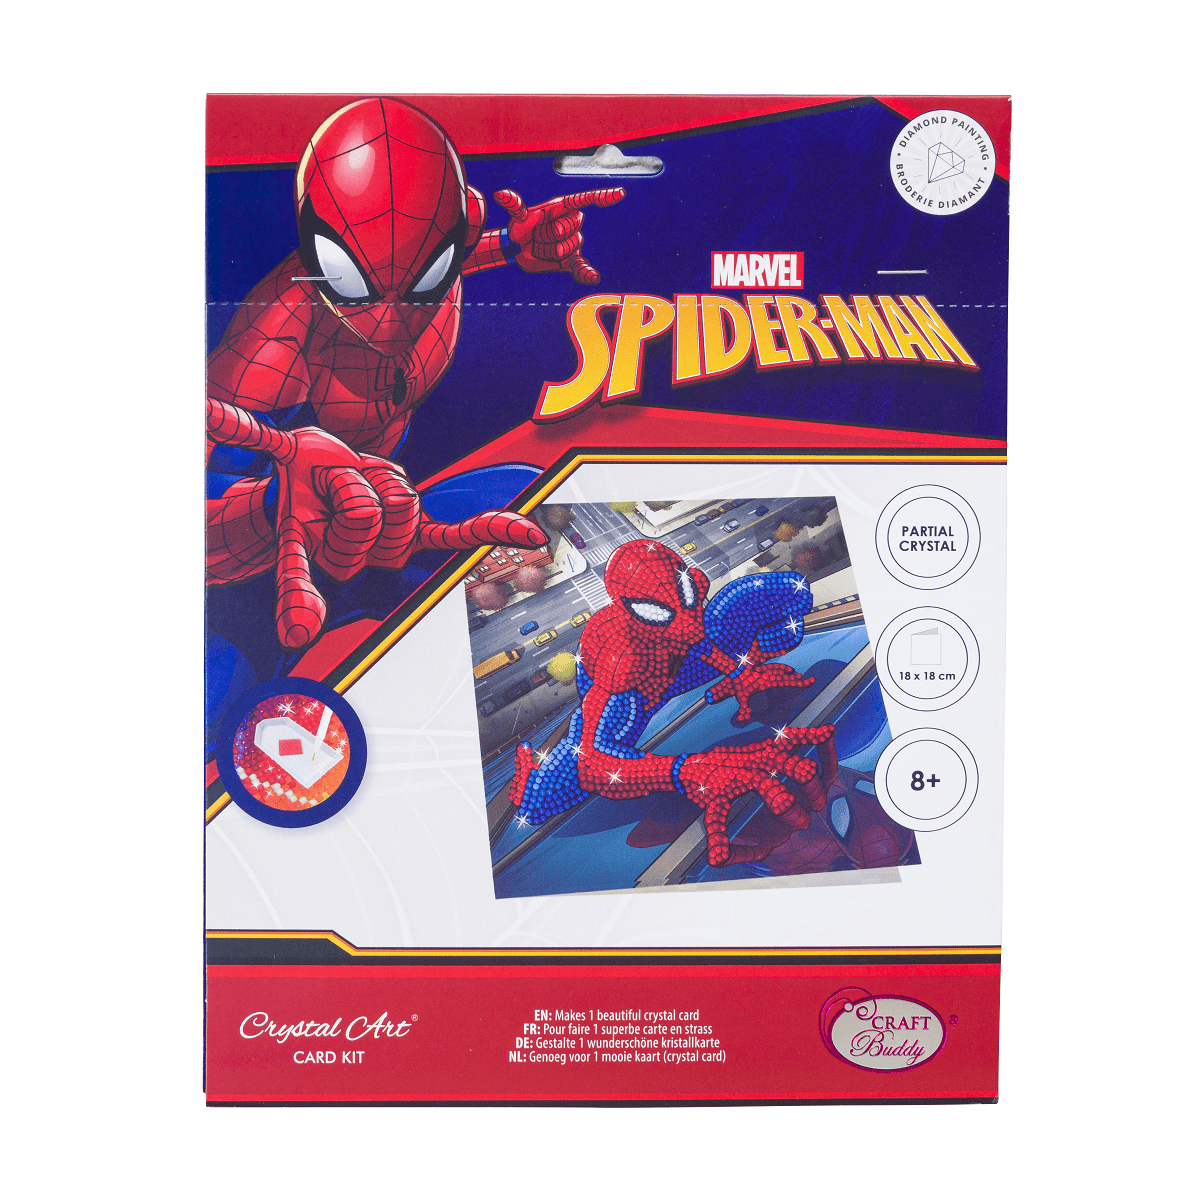 BRAND NEW Marvel Avengers Diamond Painting Kit